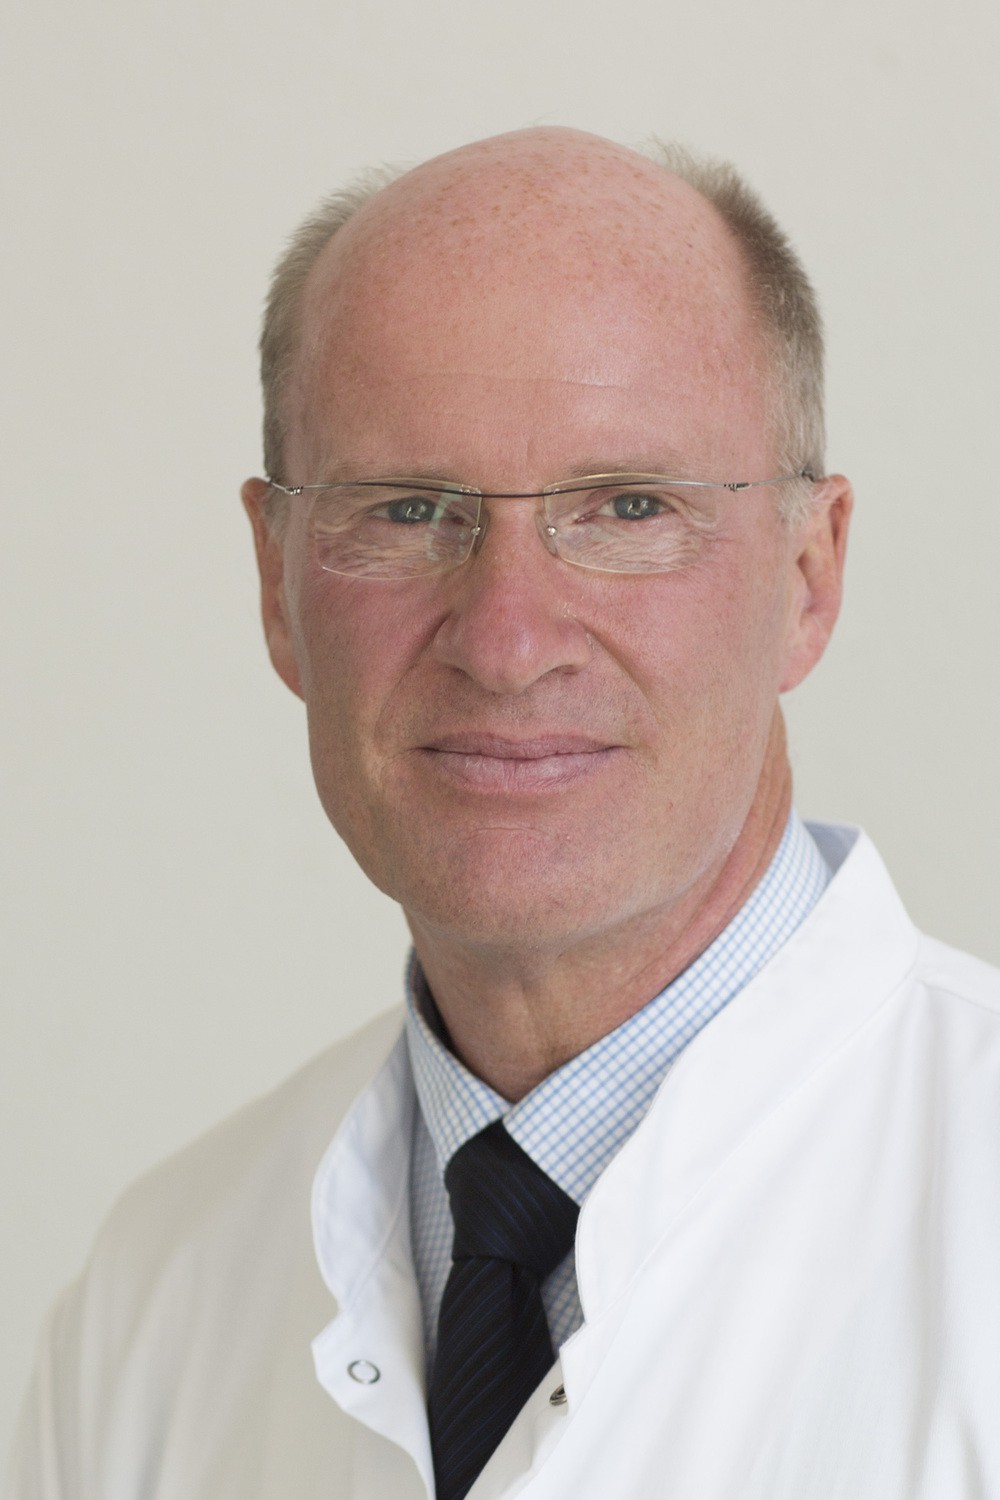 Prof. Andreas Dietz, Direktor der Klinik und Poliklinik für Hals-, Nasen- und Ohrenheilkunde am UKL, leitet den Patiententag zu Kopf-Hals-Tumoren am 19. September. .